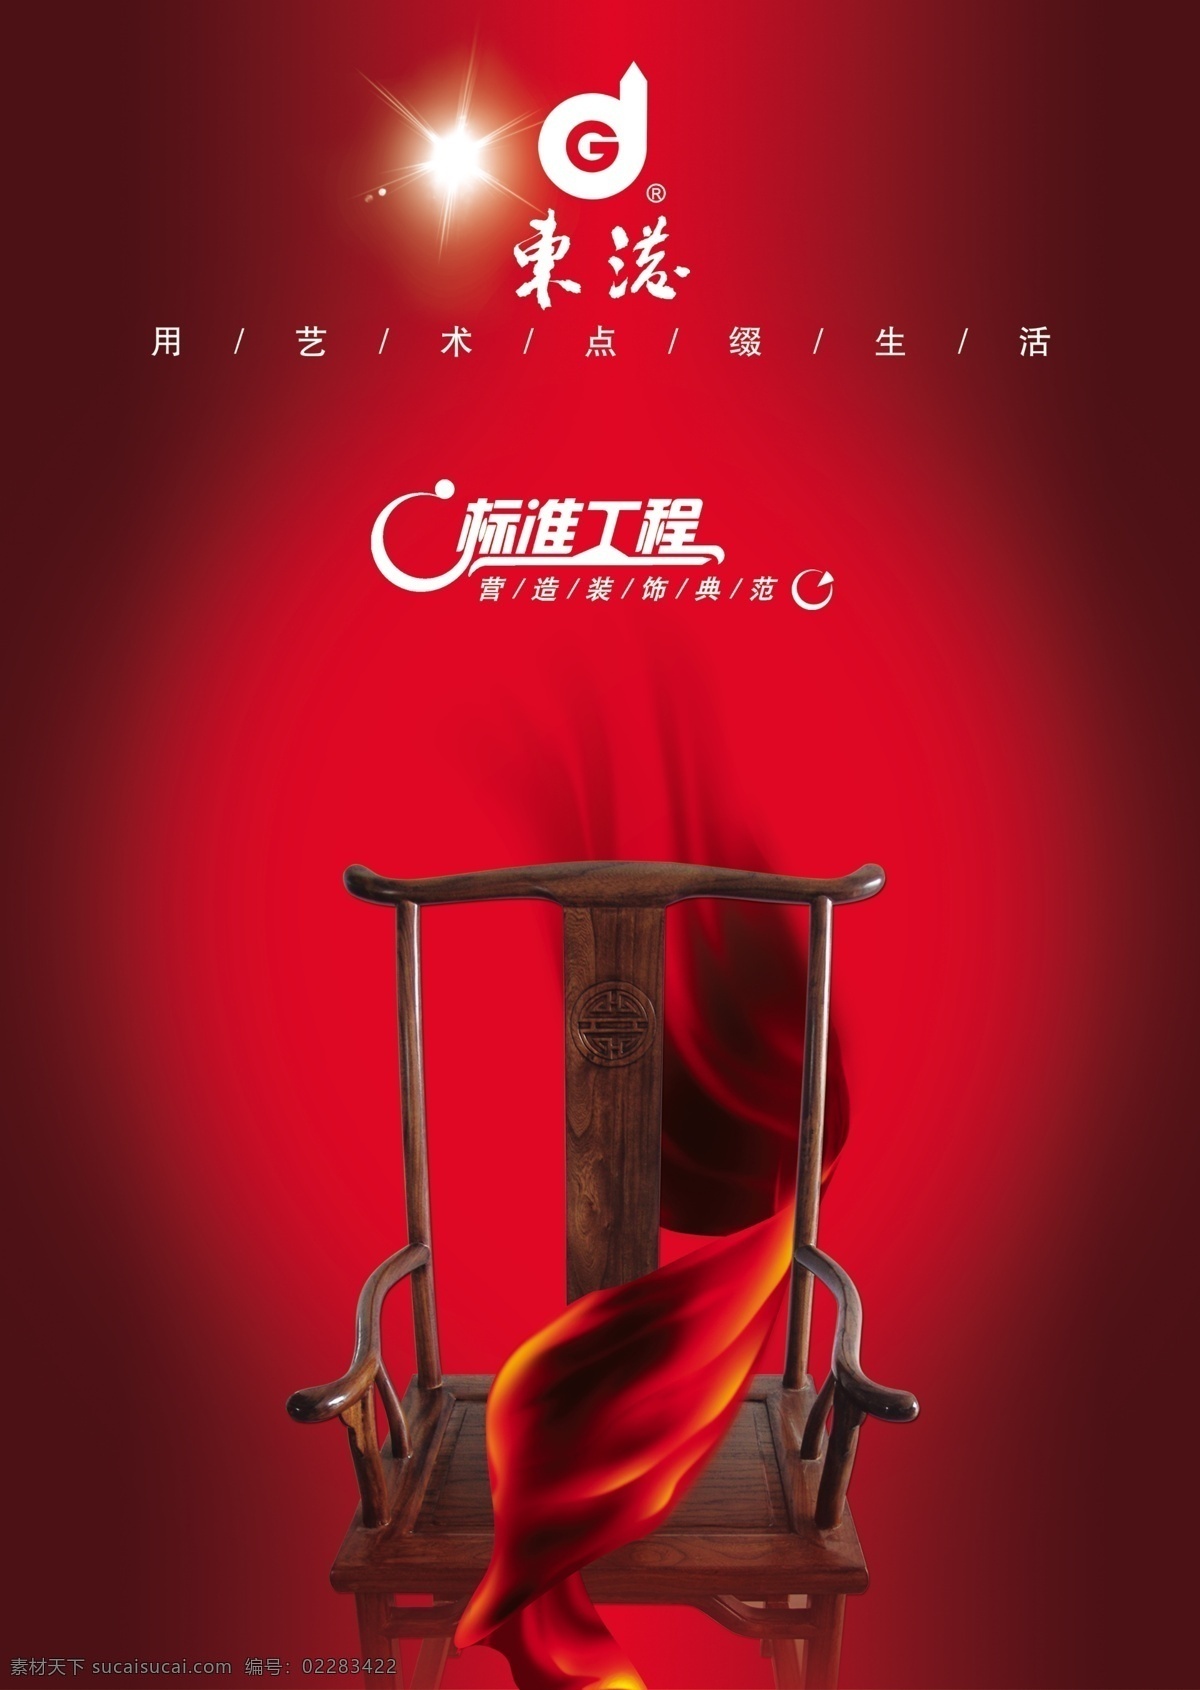 太师椅红绸 光照效果 红色背景 太师椅 椅子 红色 绸缎 红布 背景素材 分层 源文件